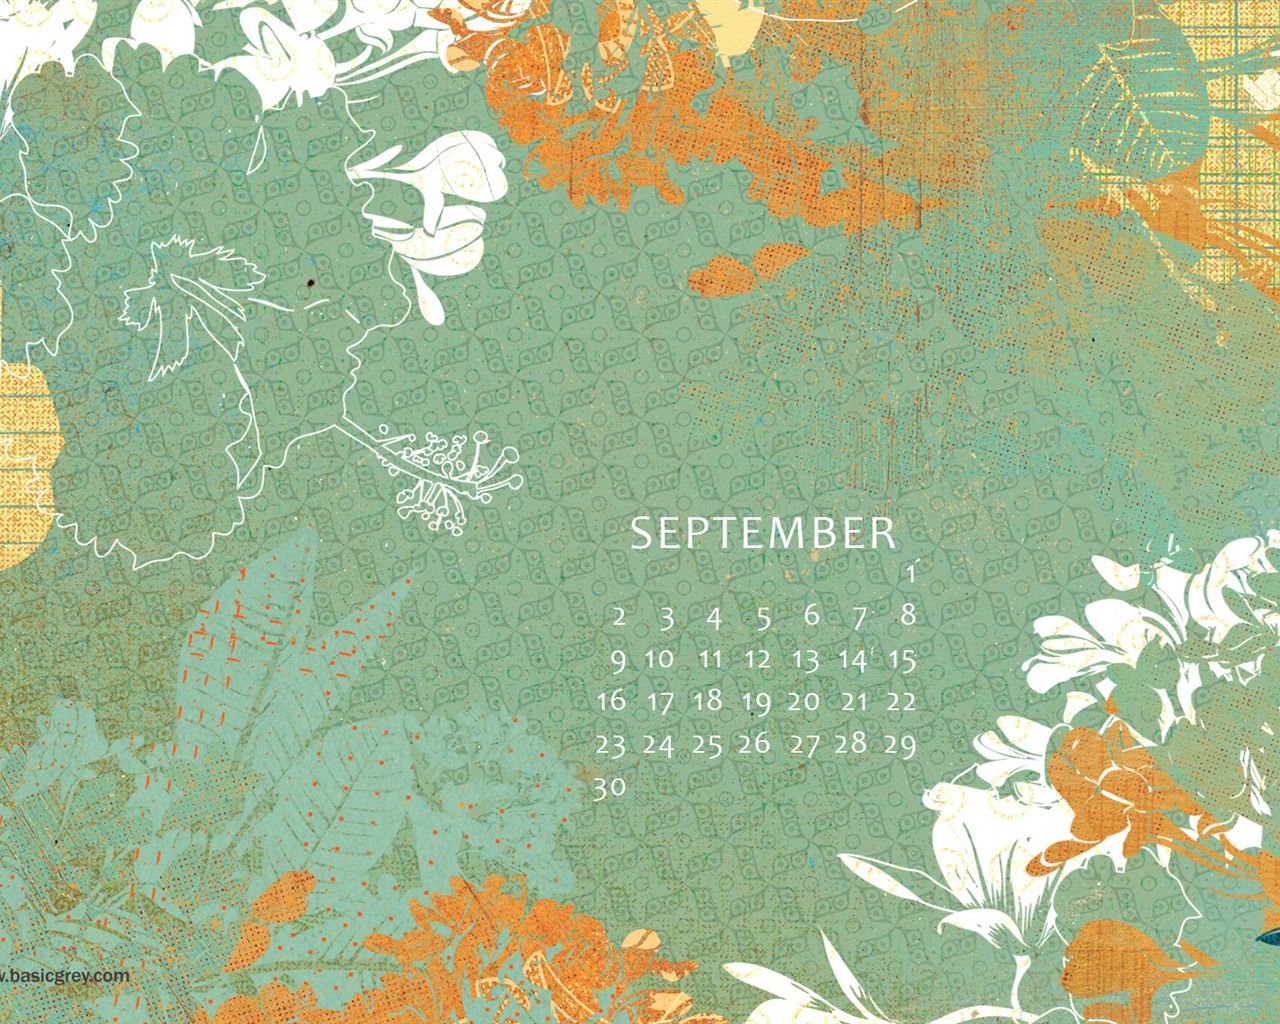 September 2012 Calendar wallpaper (1) #11 - 1280x1024